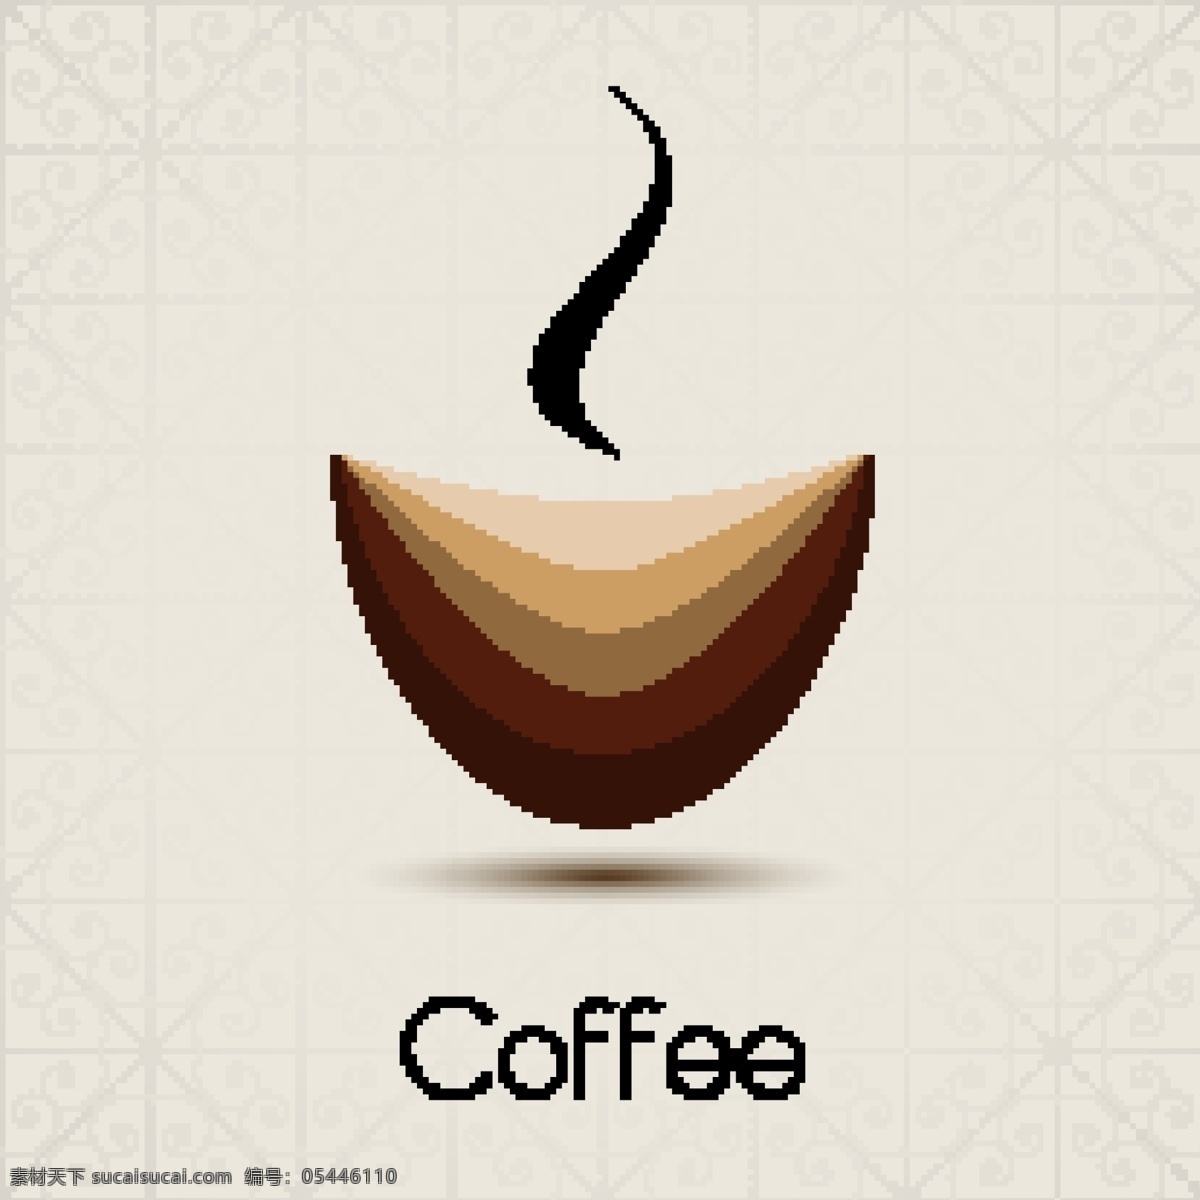 咖啡 coffee 图标 咖啡设计 咖啡图标 咖啡标志 咖啡豆 咖啡店 咖啡元素 咖啡店图标 logo 咖啡商标 标志 vi icon 小图标 图标设计 logo设计 标志设计 标识设计 矢量设计 餐饮美食 生活百科 矢量